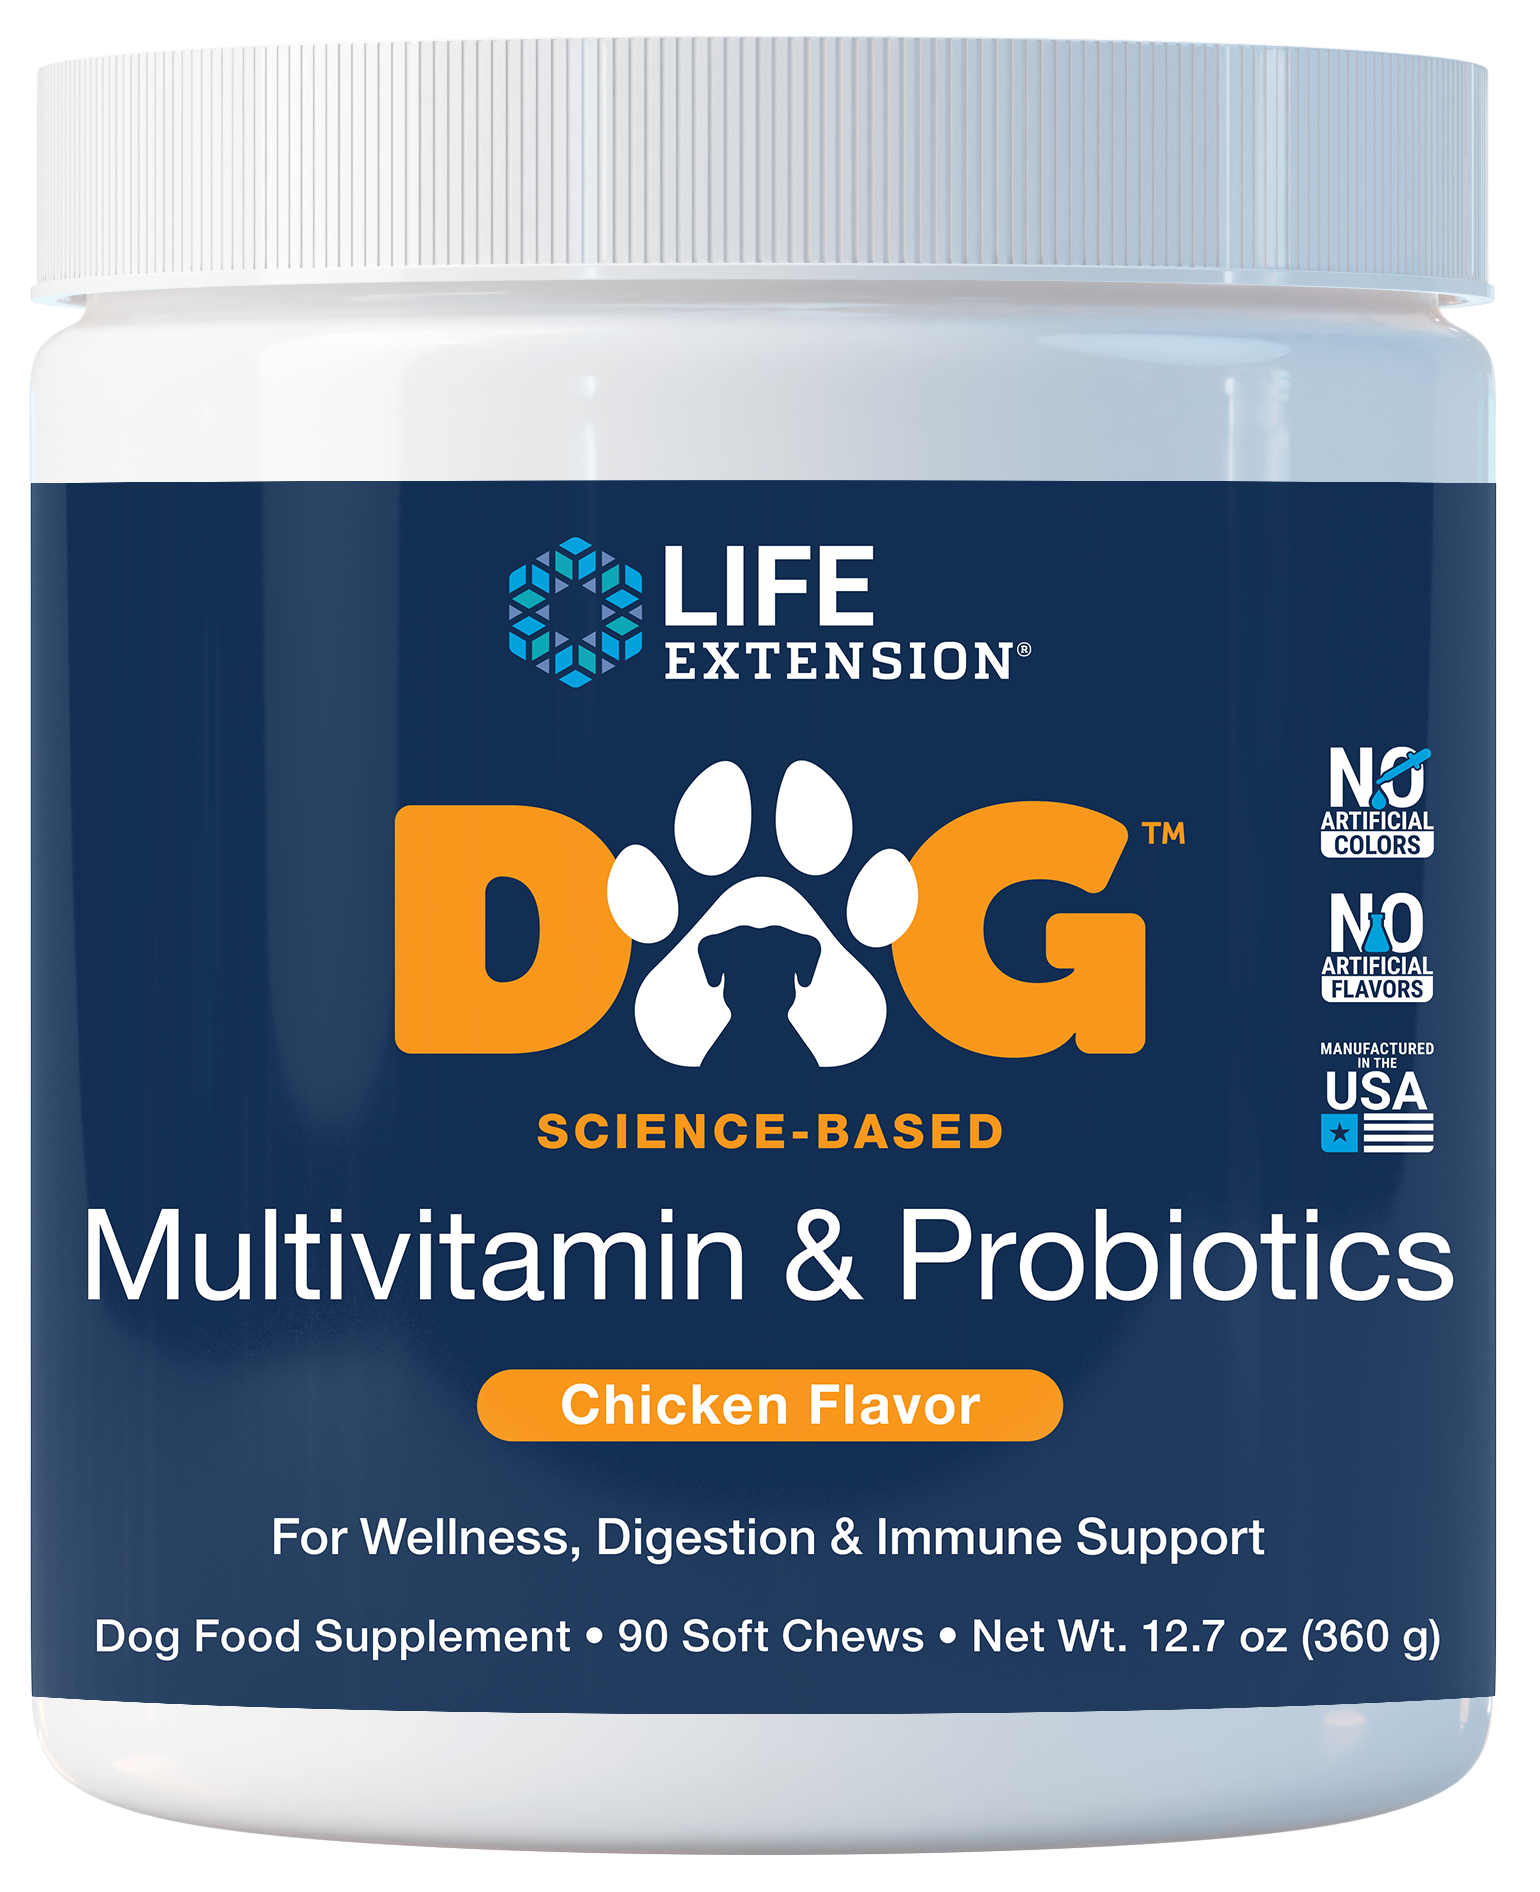 DOG Multivitamin & Probiotics est 90 croquettes molles au goût de poulet pour la santé globale, immunitaire et digestive des chiens.